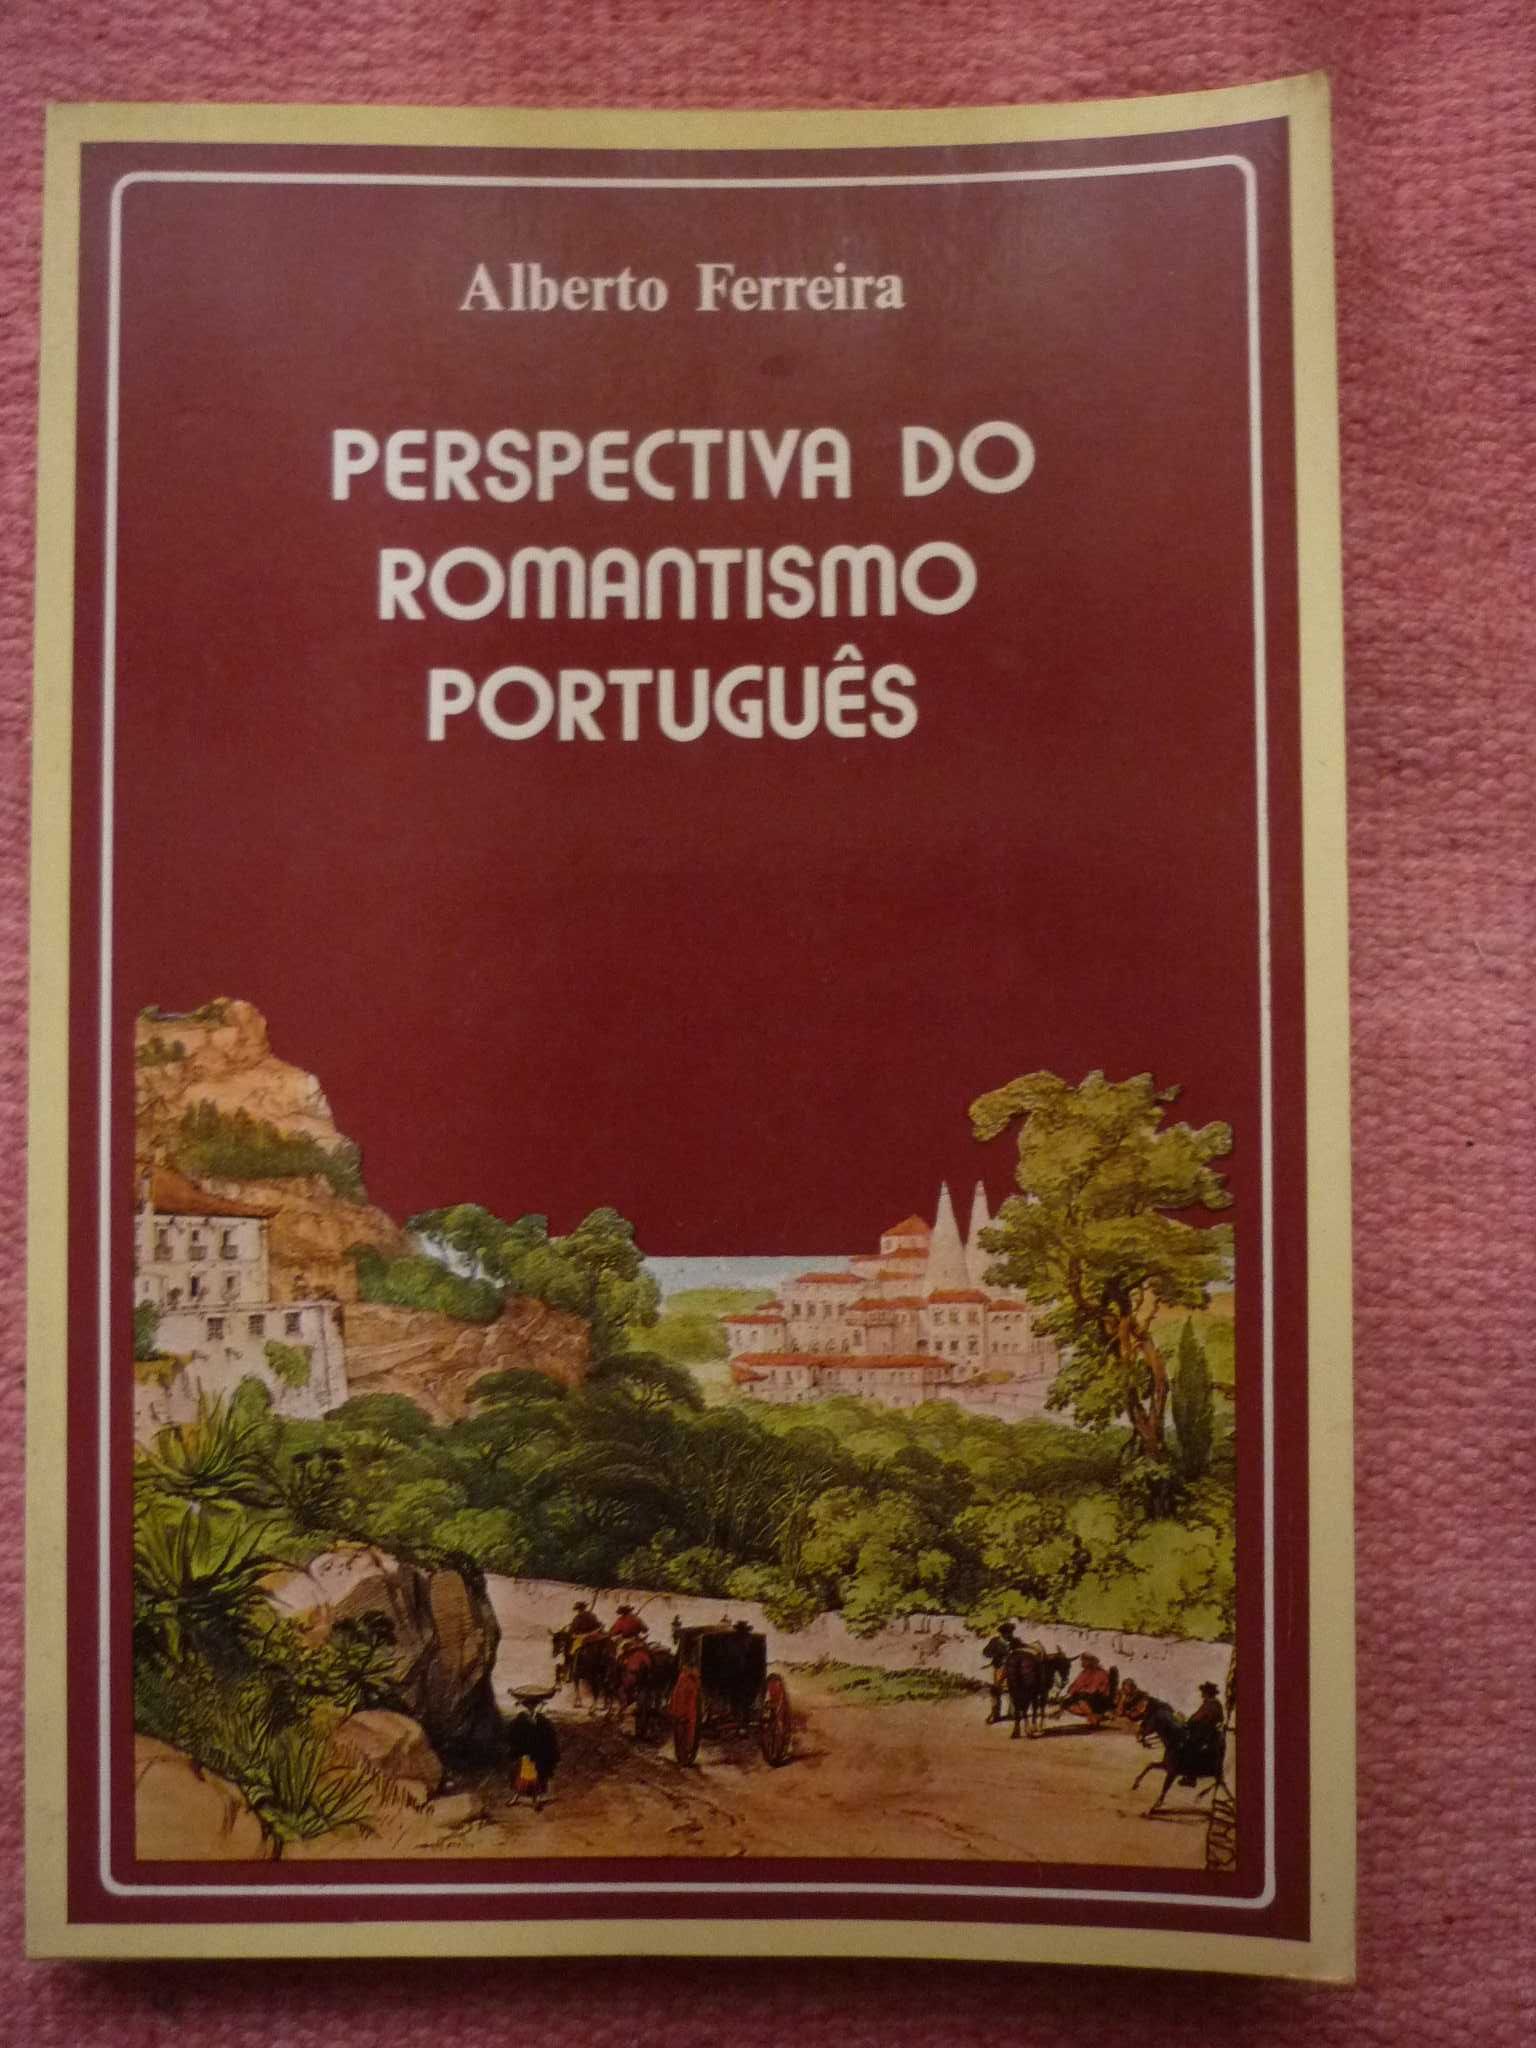 Alberto Ferreira, Perspectiva do romantismo português